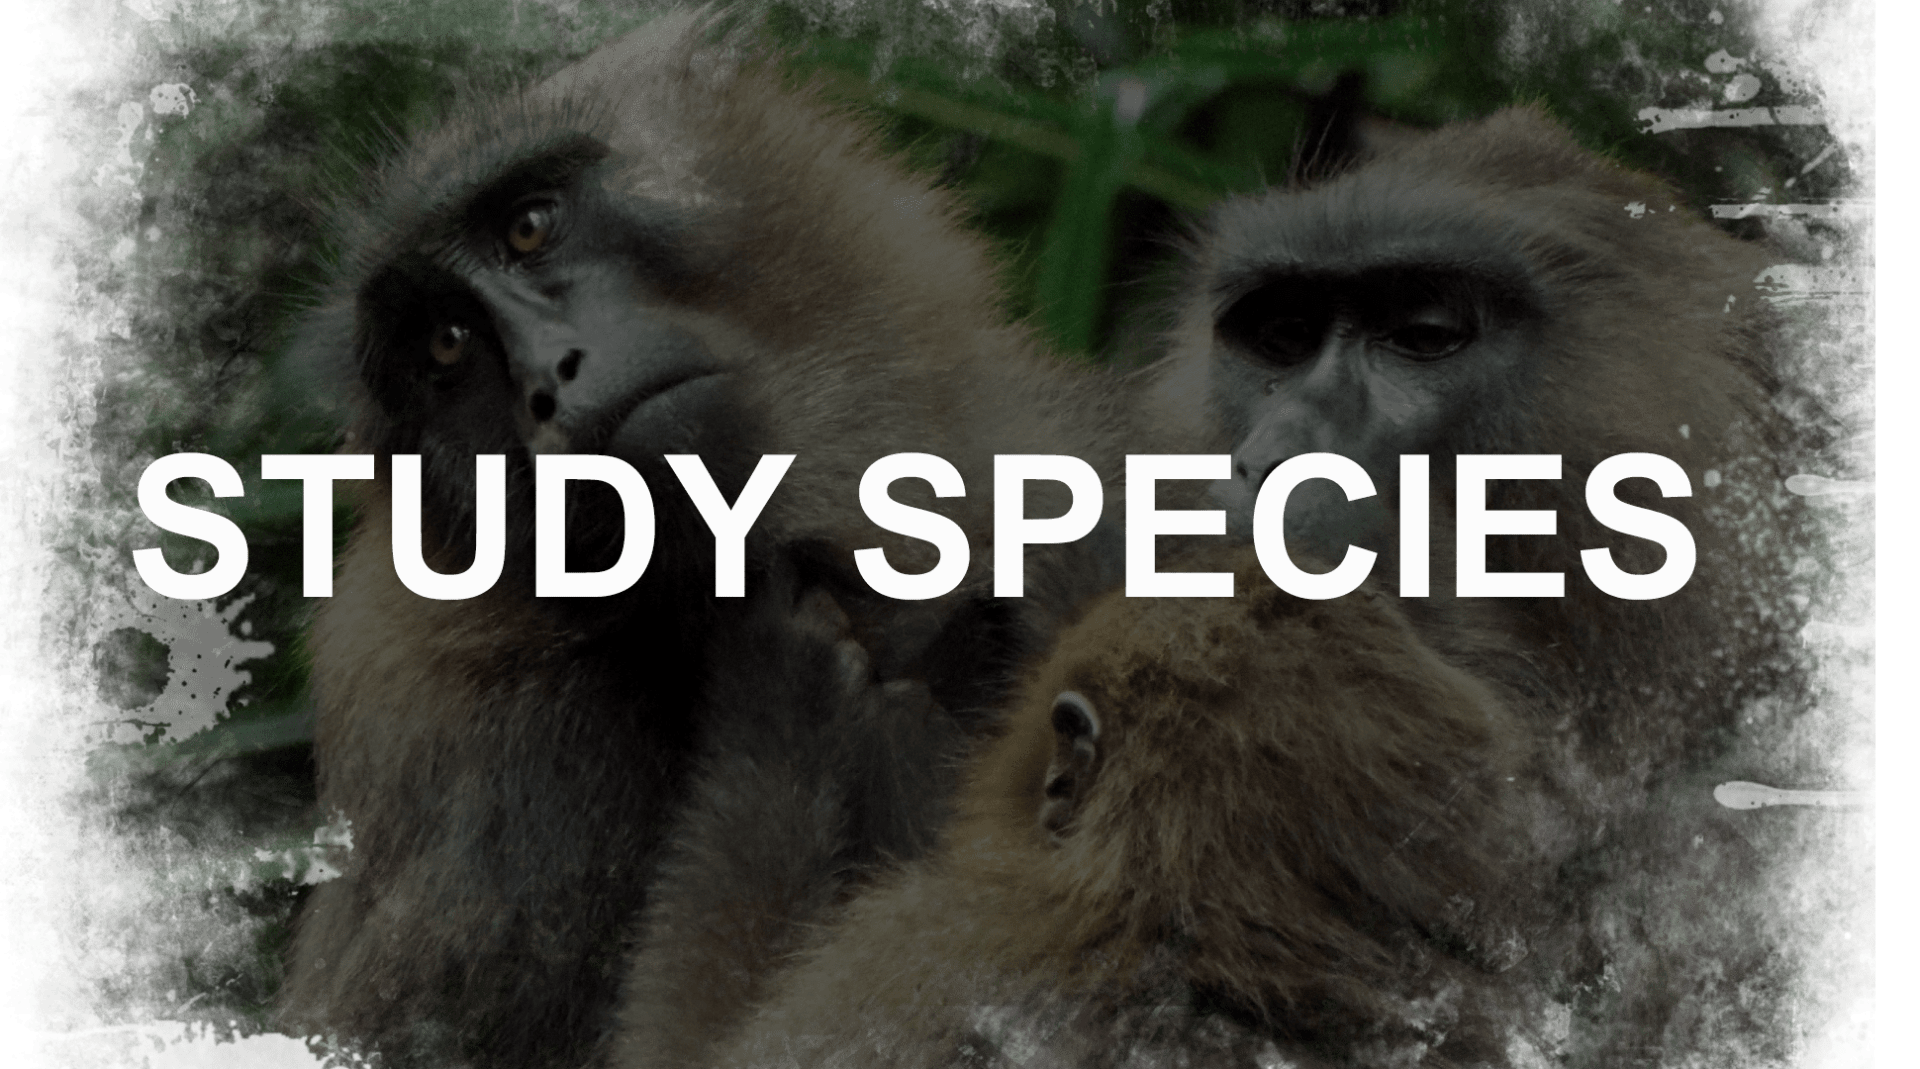 Study species